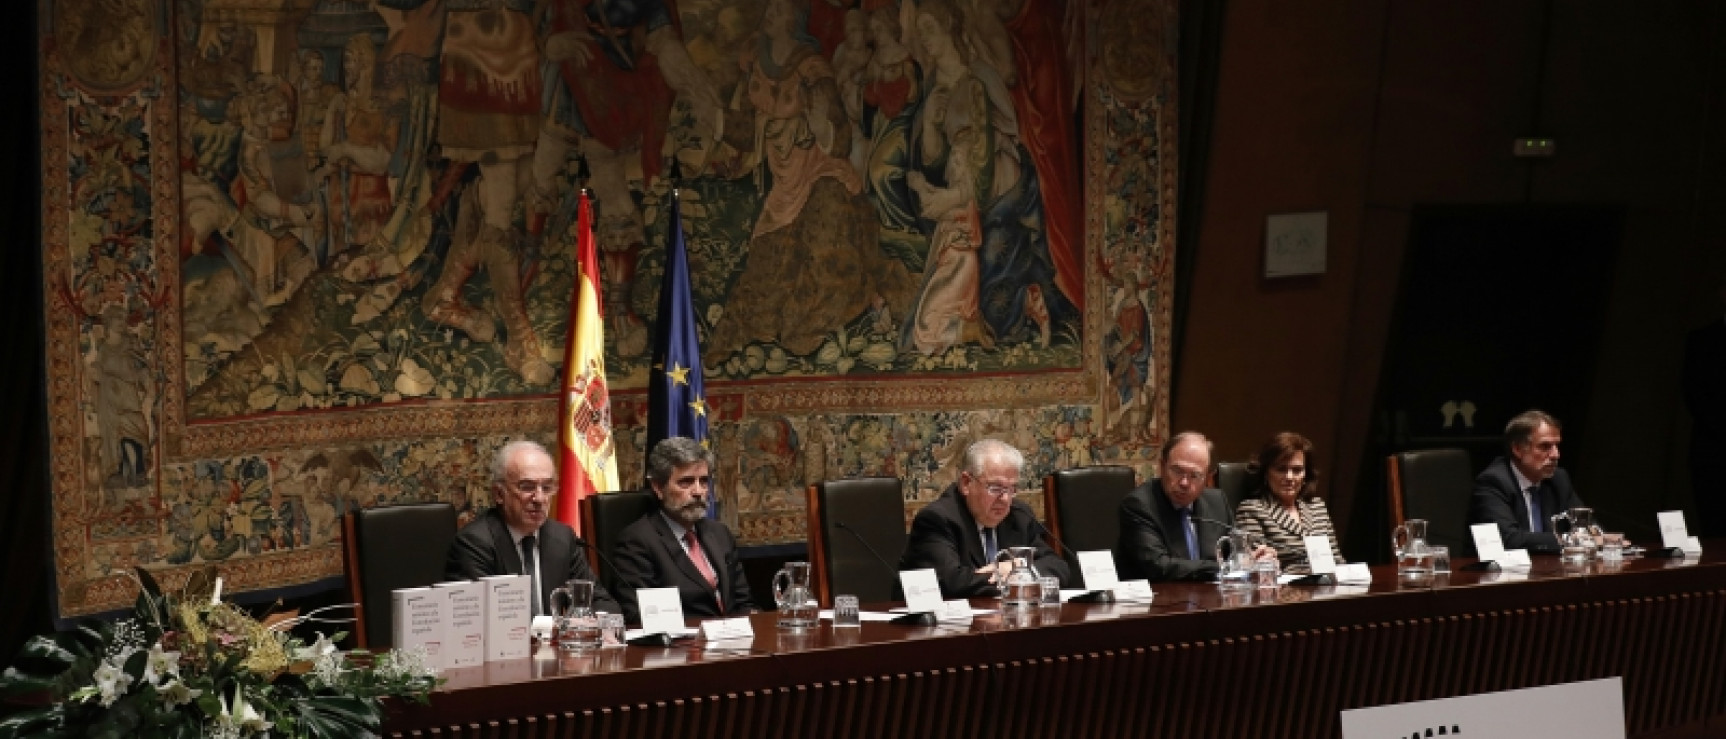 De izquierda a derecha: Santiago Muñoz Machado, Carlos Lesmes, Juan José González de la Riva, Pio García Escudero, Carmen Calvo y José Crehueras.